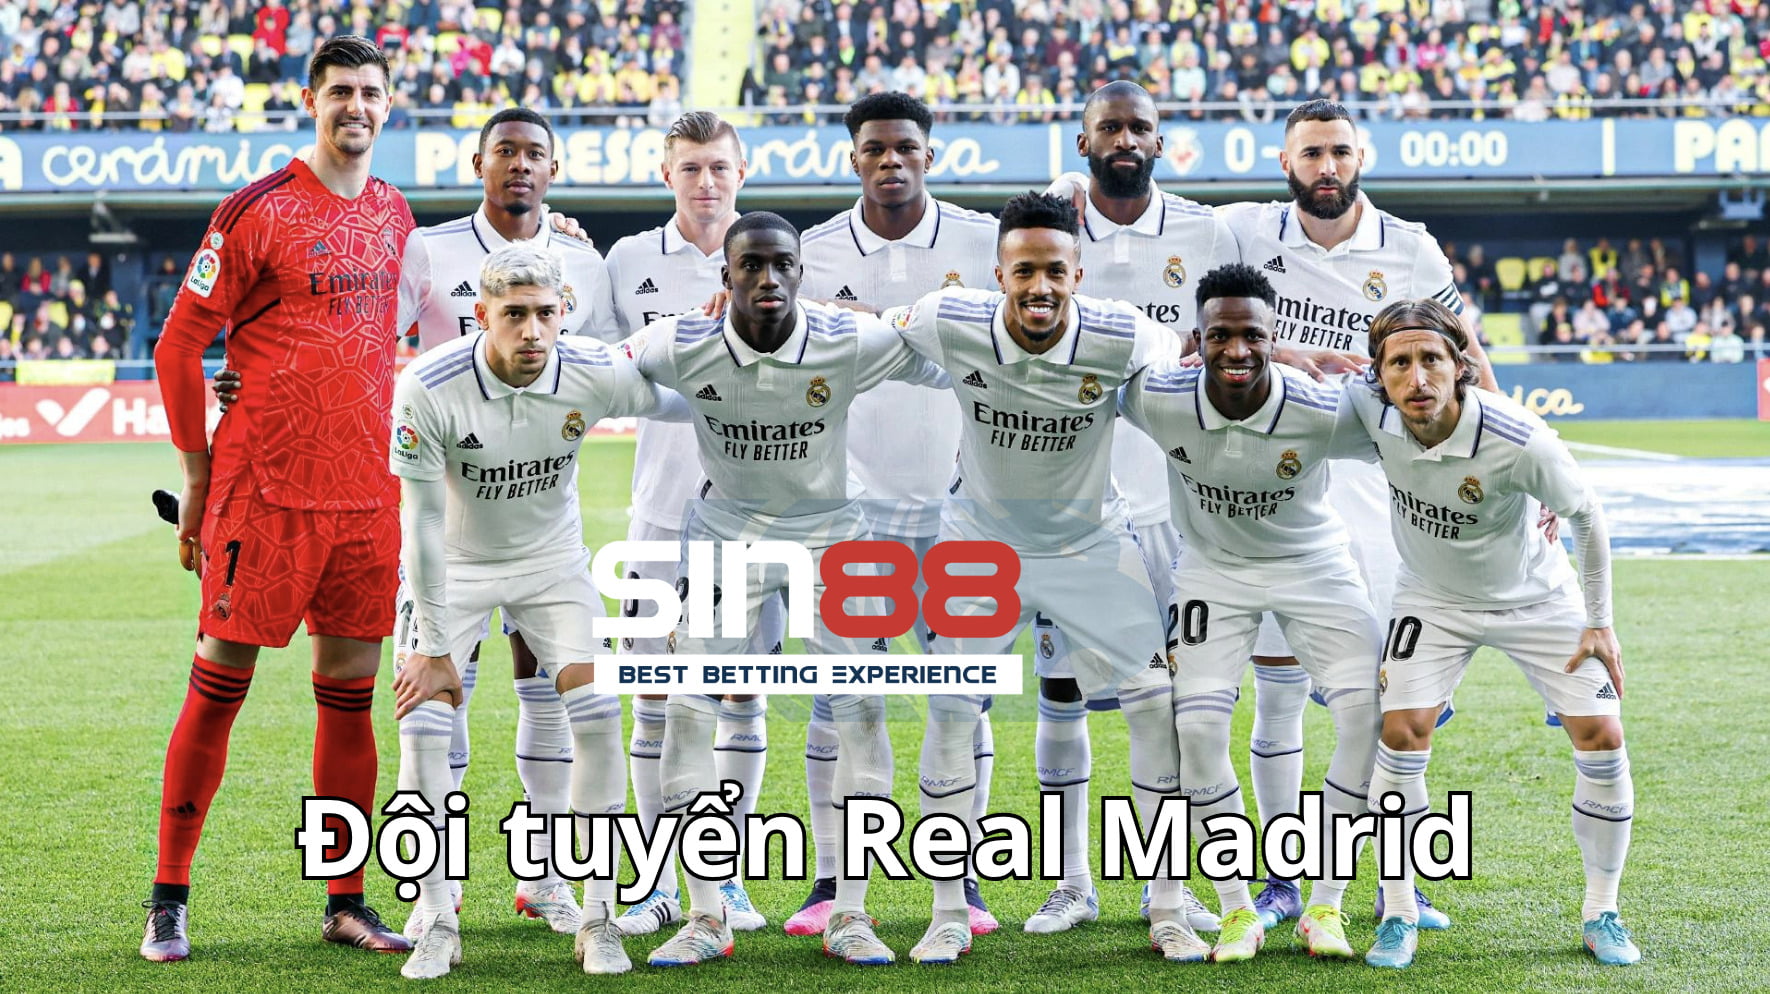 Real Madrid xếp thứ 4 trong danh sách